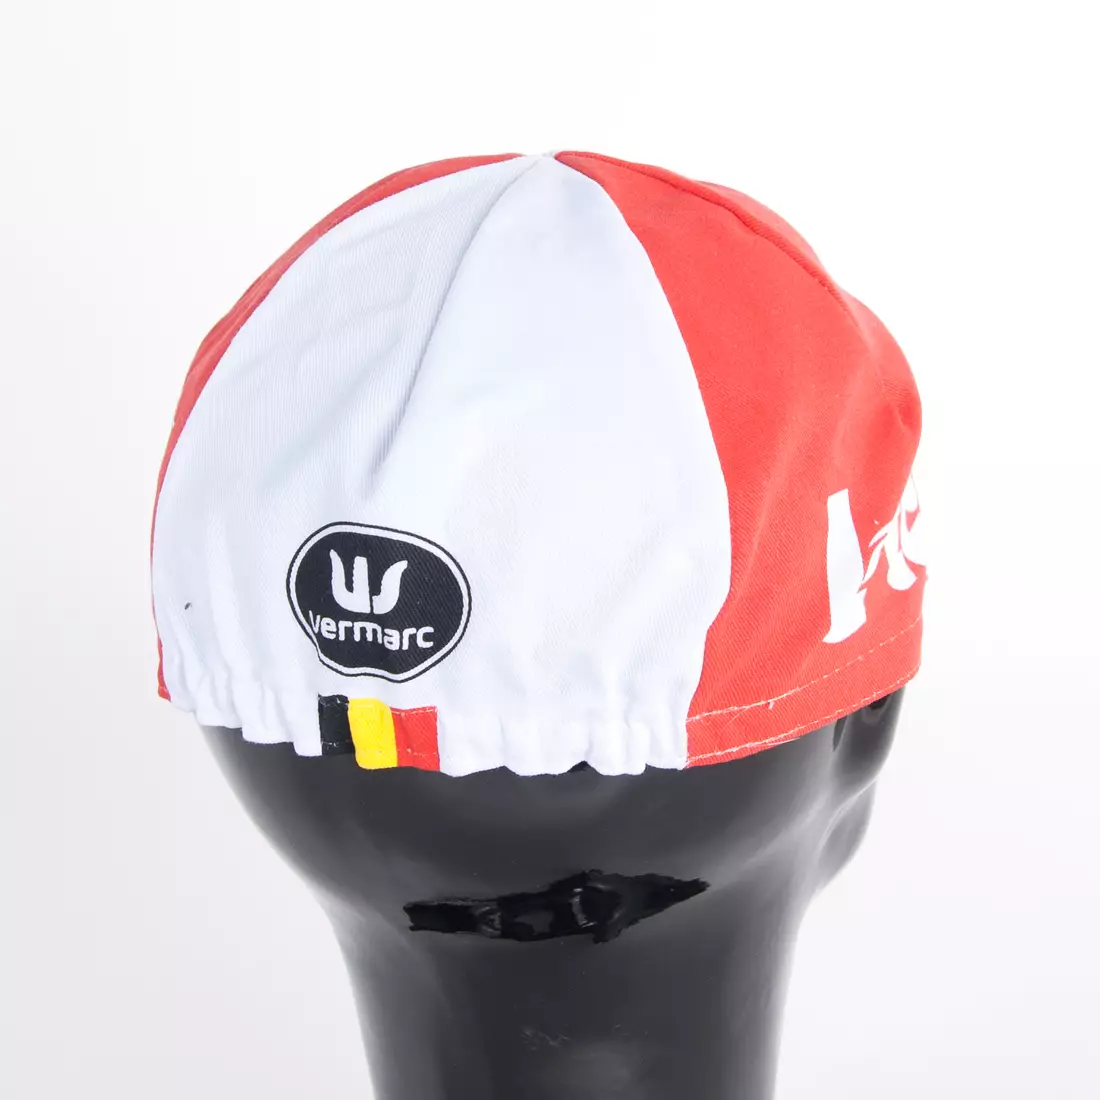 Apis Profi LOTTO SOUDAL kerékpáros sapka, piros belga zászló